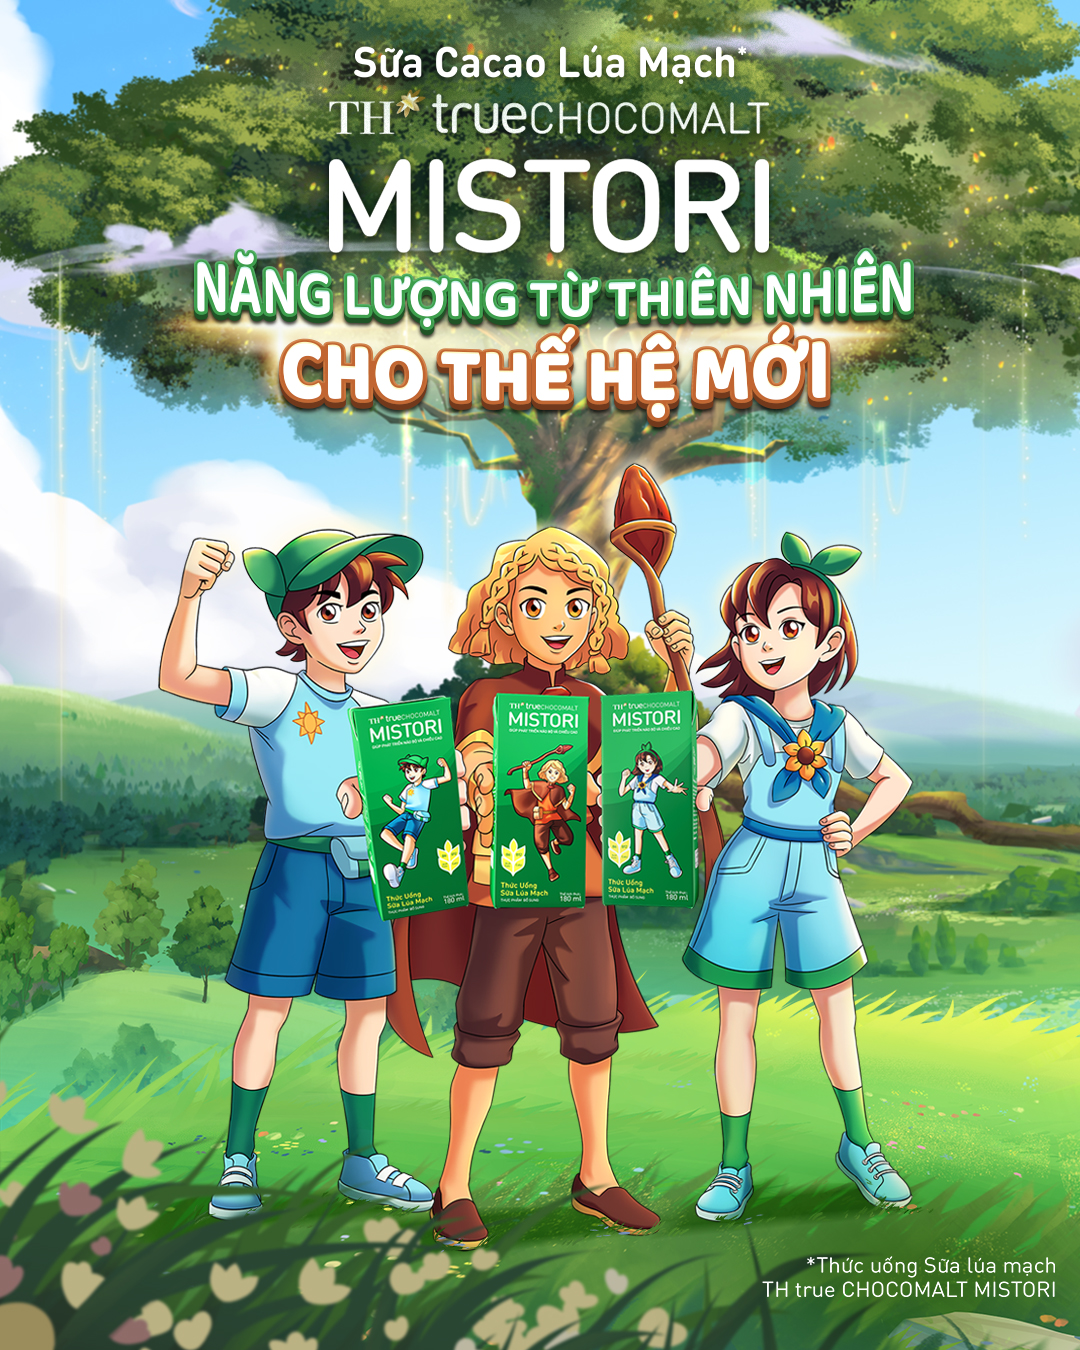 Cùng với thương hiệu mới MISTORI, Tập đoàn TH sáng tạo nên các nhân vật như Cậu Bé Thần (giữa) từ Tinh cầu Chocomalt và các cô bé, cậu bé đáng yêu từ Địa Cầu